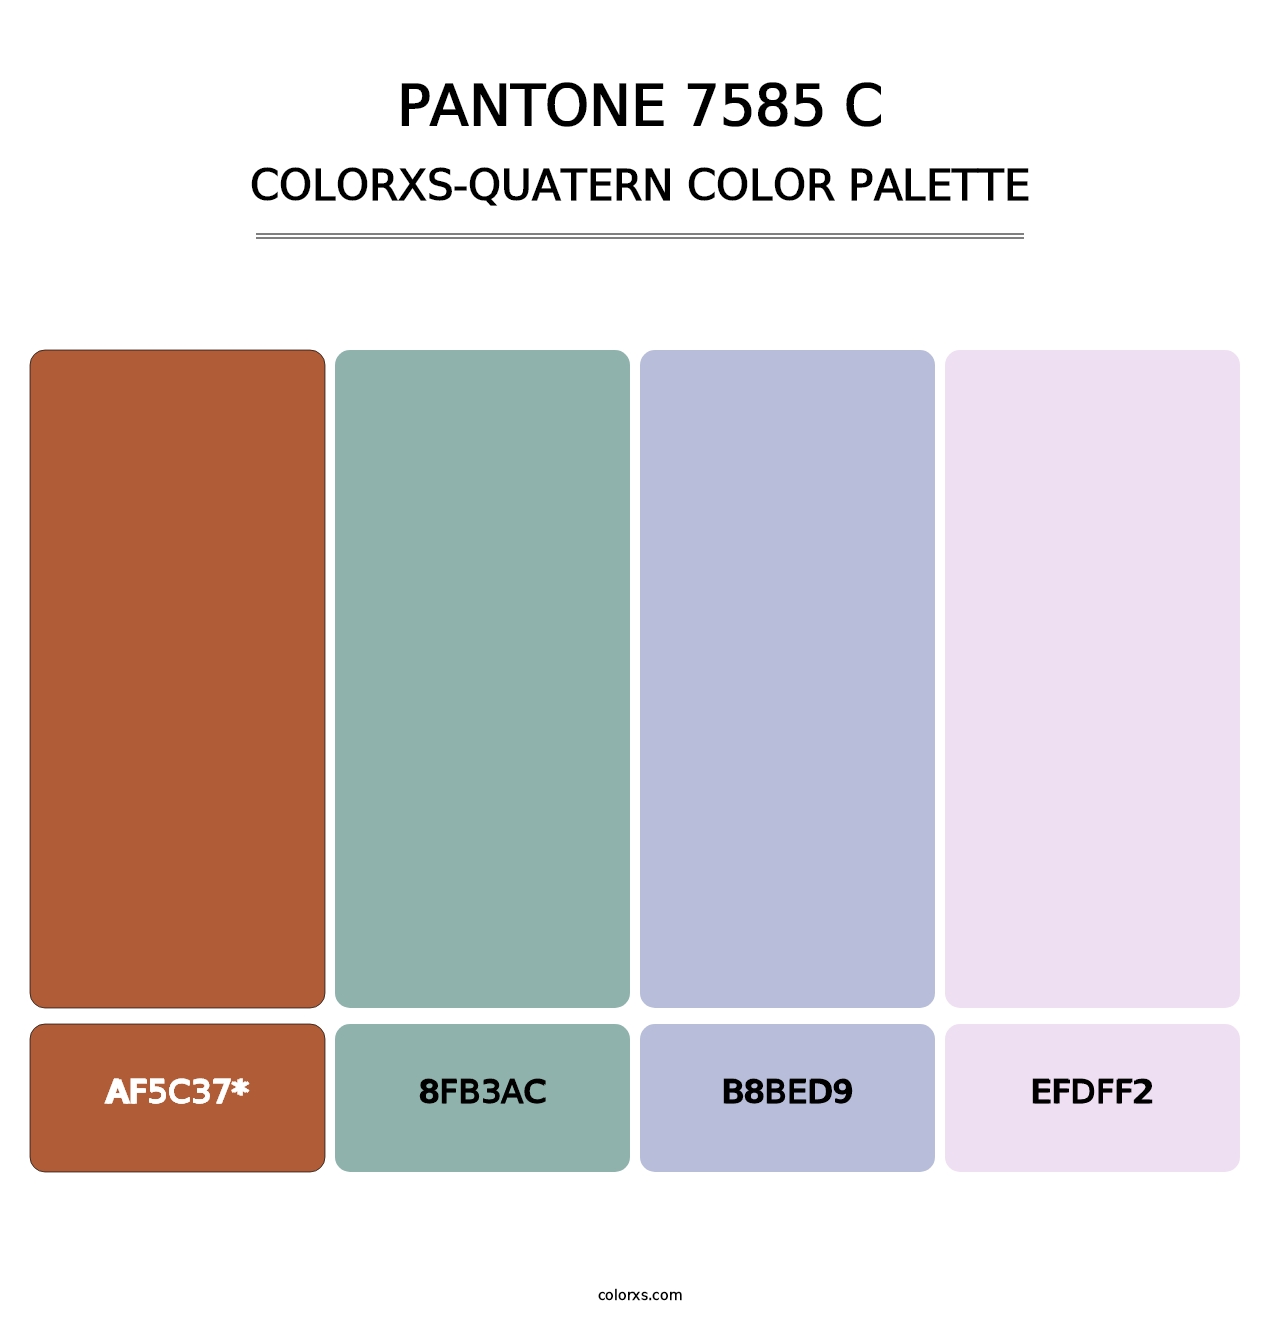 PANTONE 7585 C - Colorxs Quatern Palette